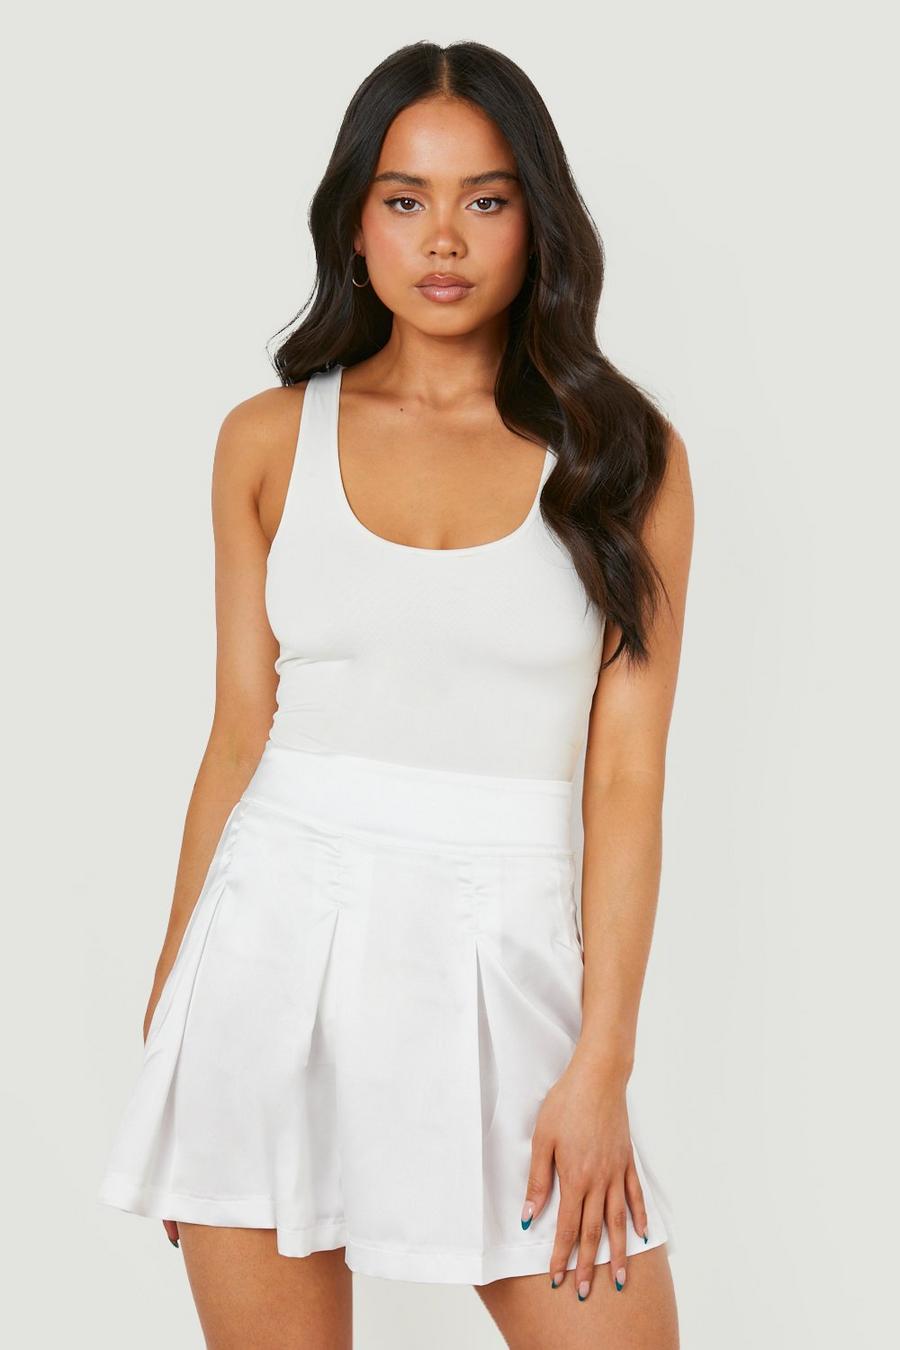 לבן white חצאית מיקרו מיני עם קפלים בגזרה מרובעת פטיט